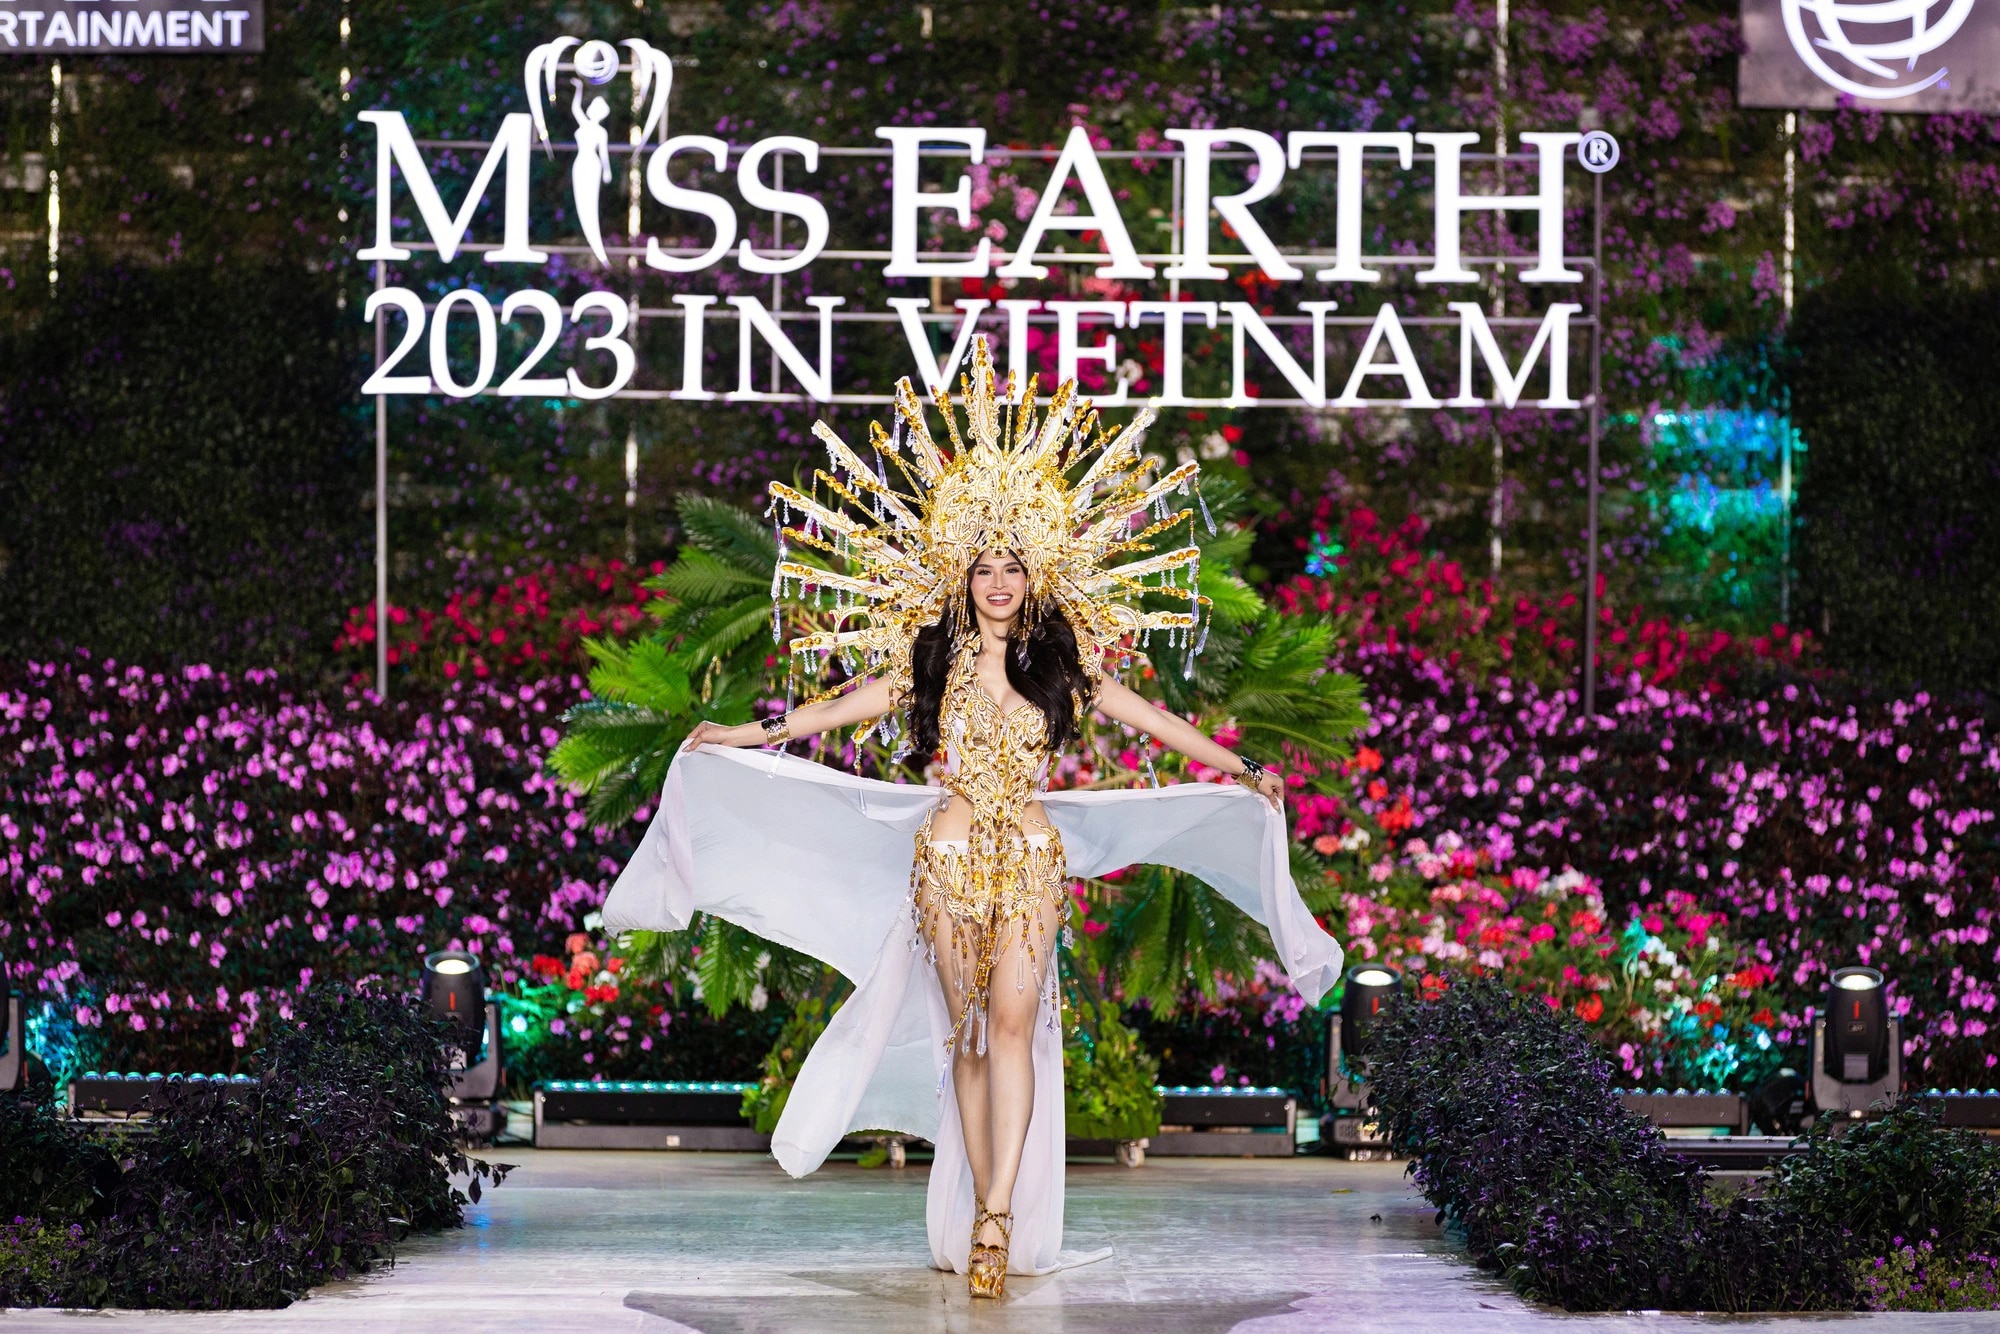 Bán kết Miss Earth 2023 màn trình Trang phục Dân tộc bùng nổ hình ảnh cỏ hoa, muông thú - Ảnh 13.